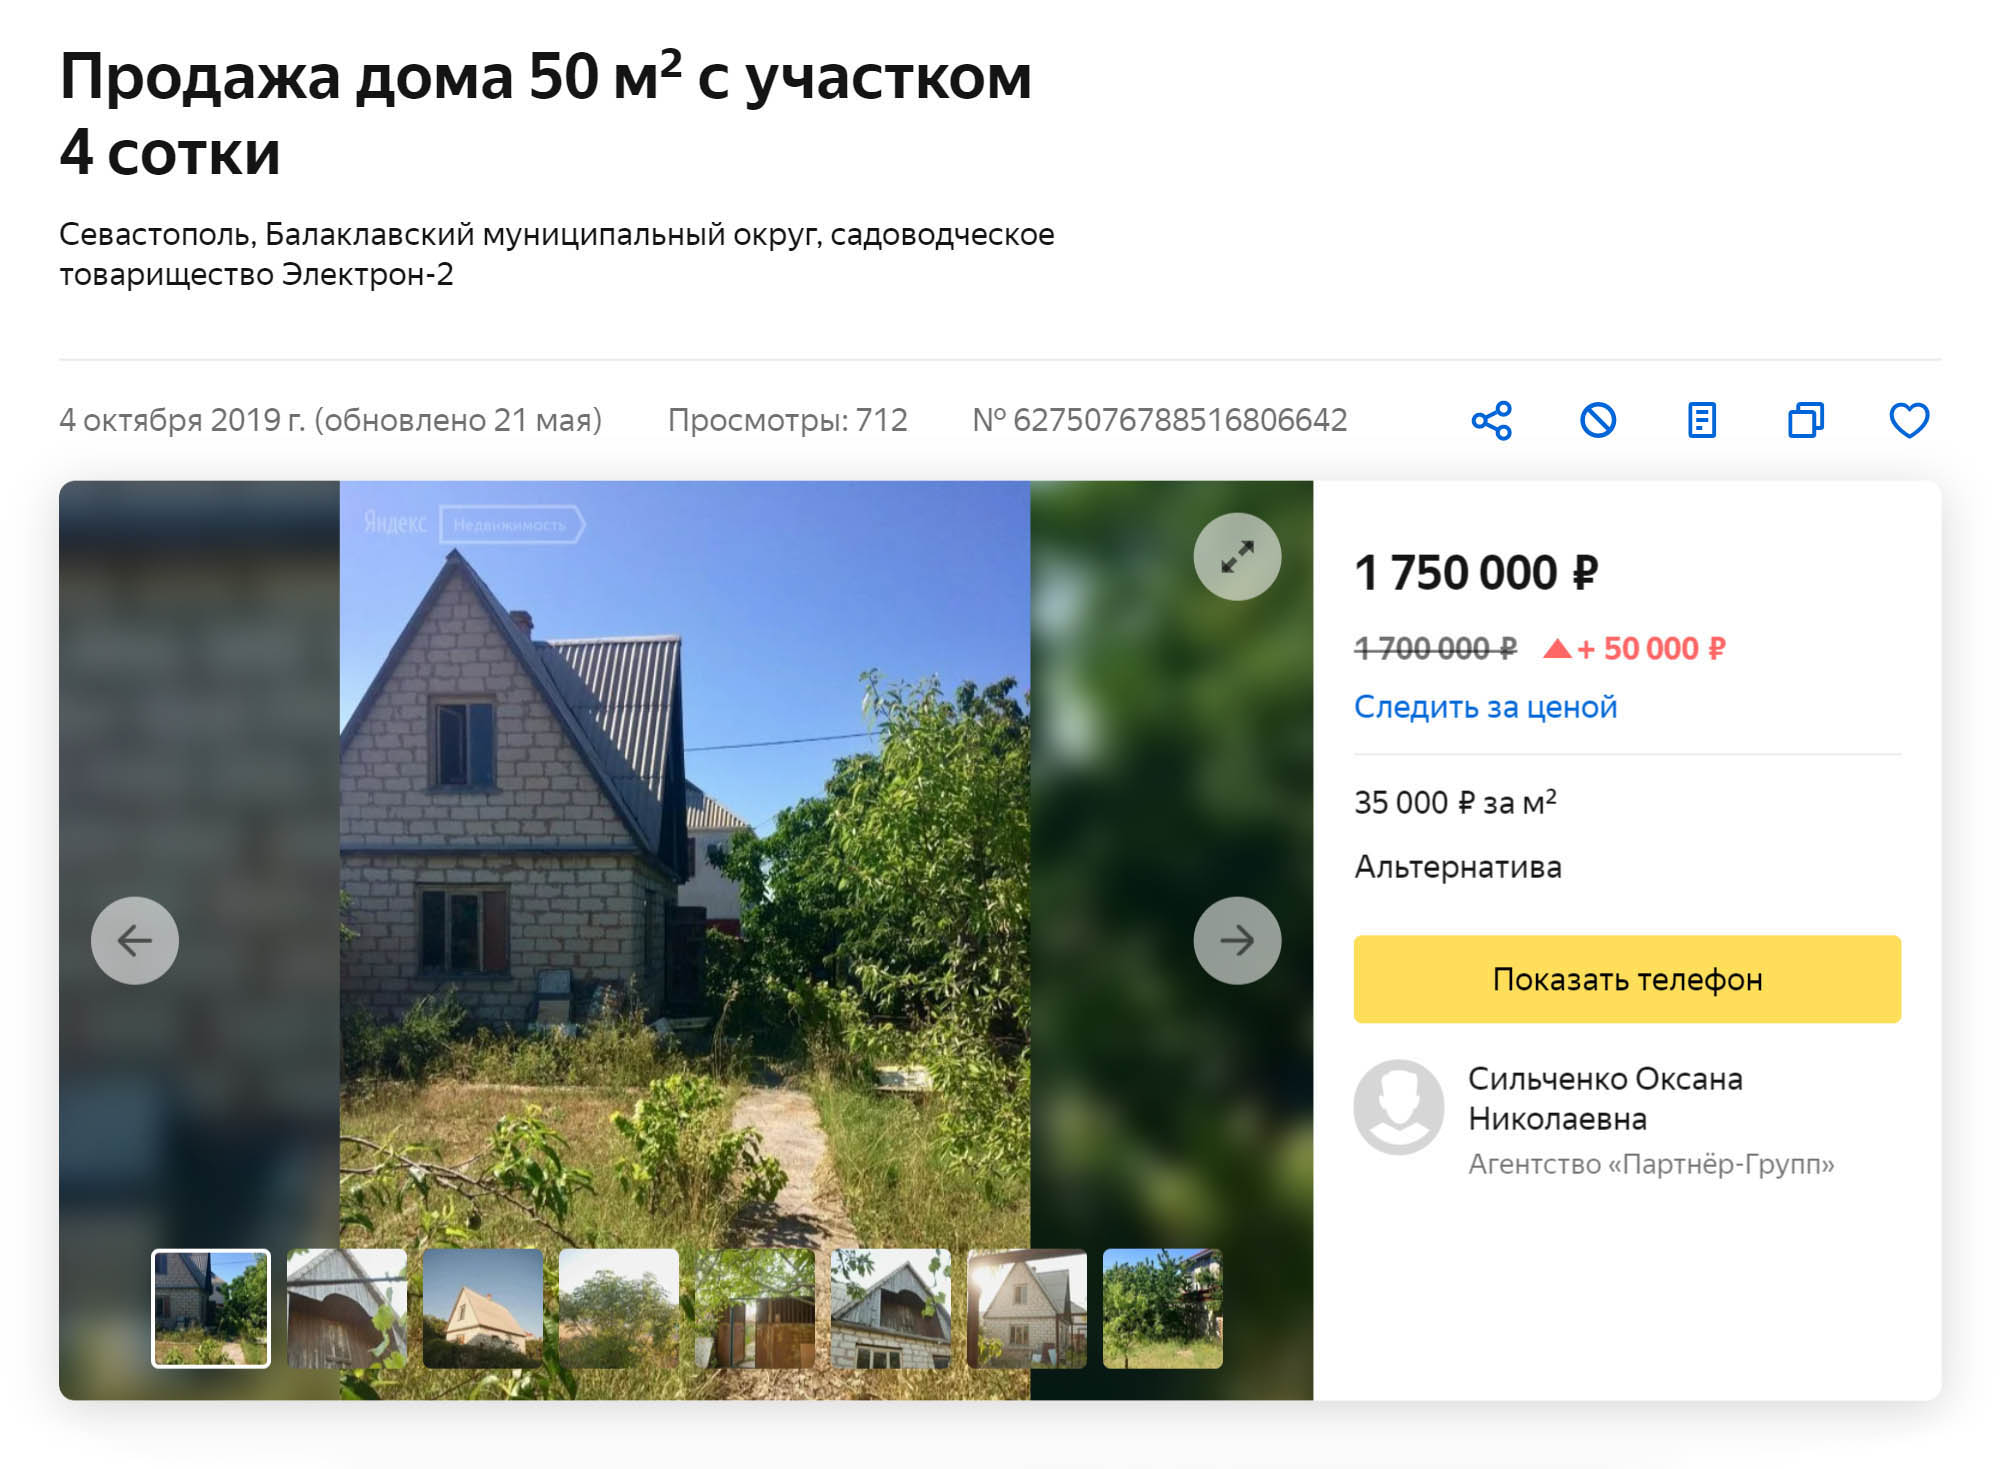 Частный дом на Фиолентовском шоссе в 5 километрах от города обойдется в 1,75 млн рублей